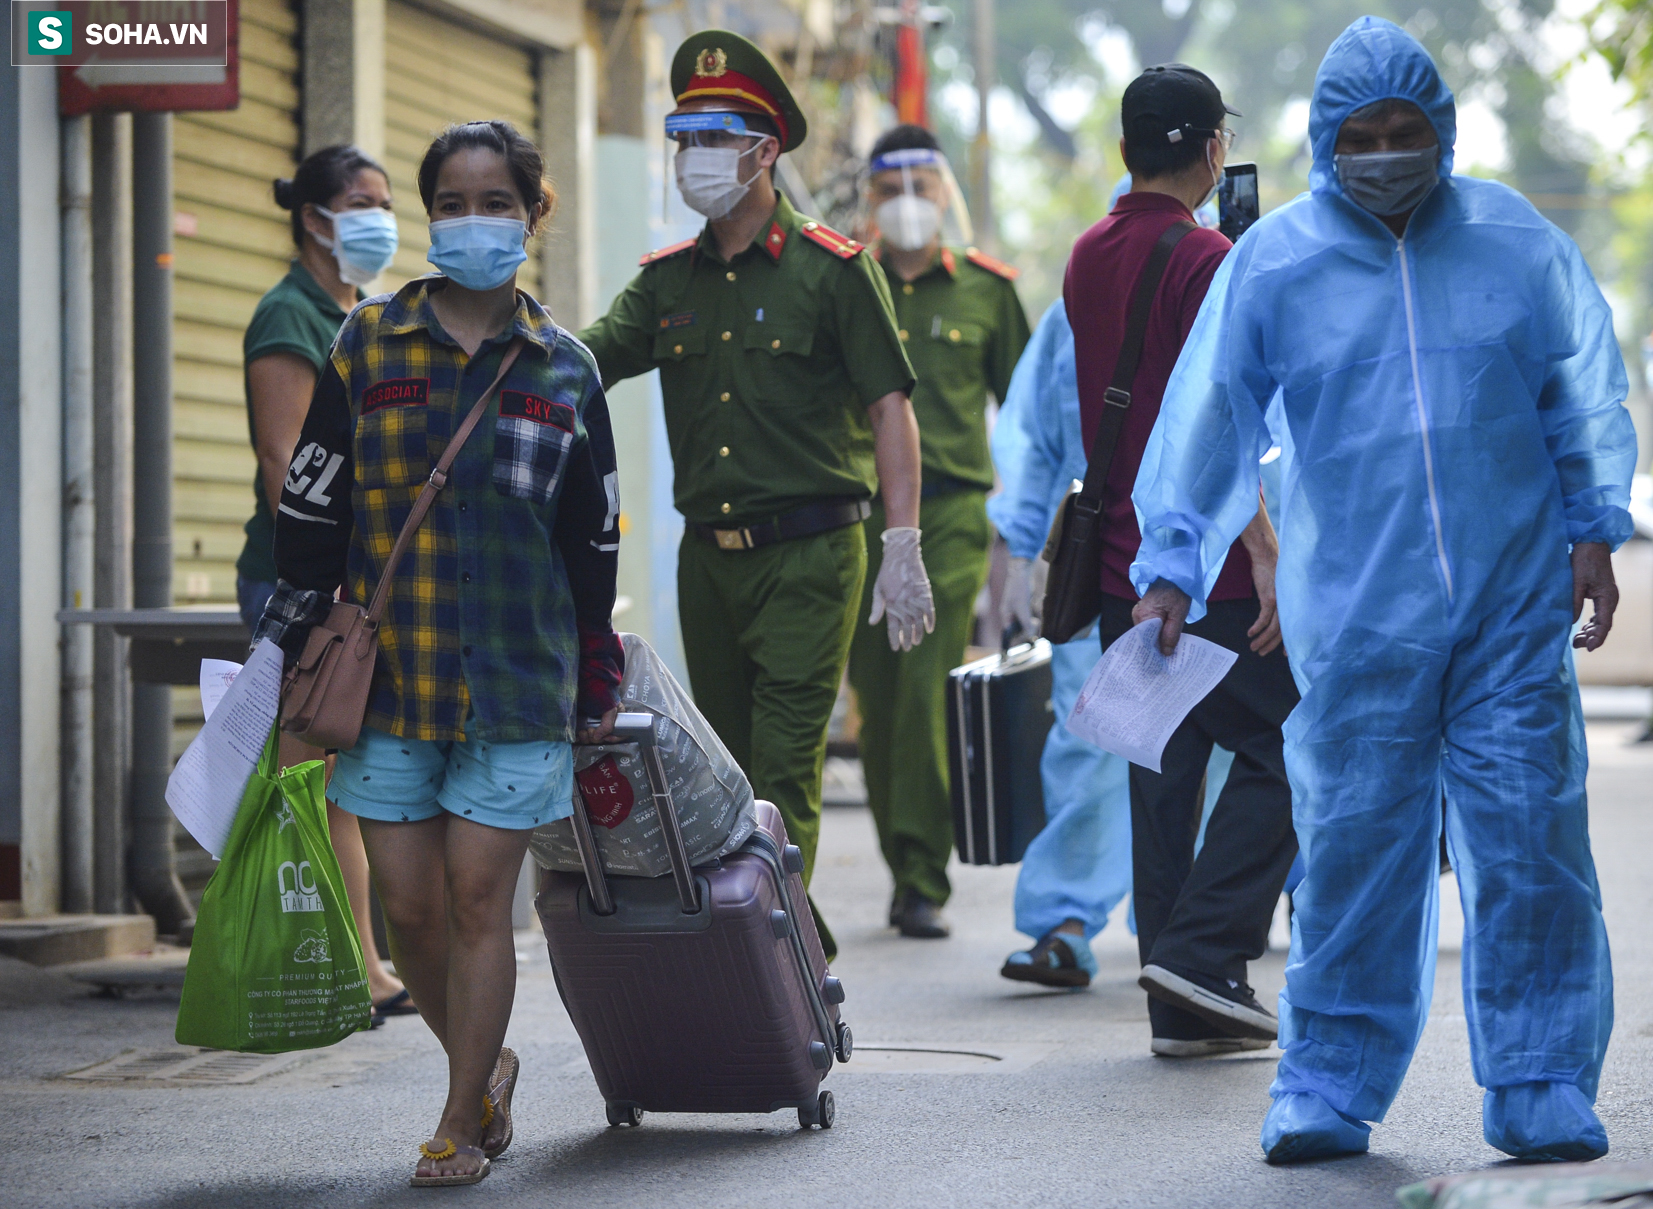 Hơn 1000 người dân tại ổ dịch có gần 600 ca mắc Covid-19 ở Hà Nội về nhà sau gần 1 tháng đi cách ly - Ảnh 12.